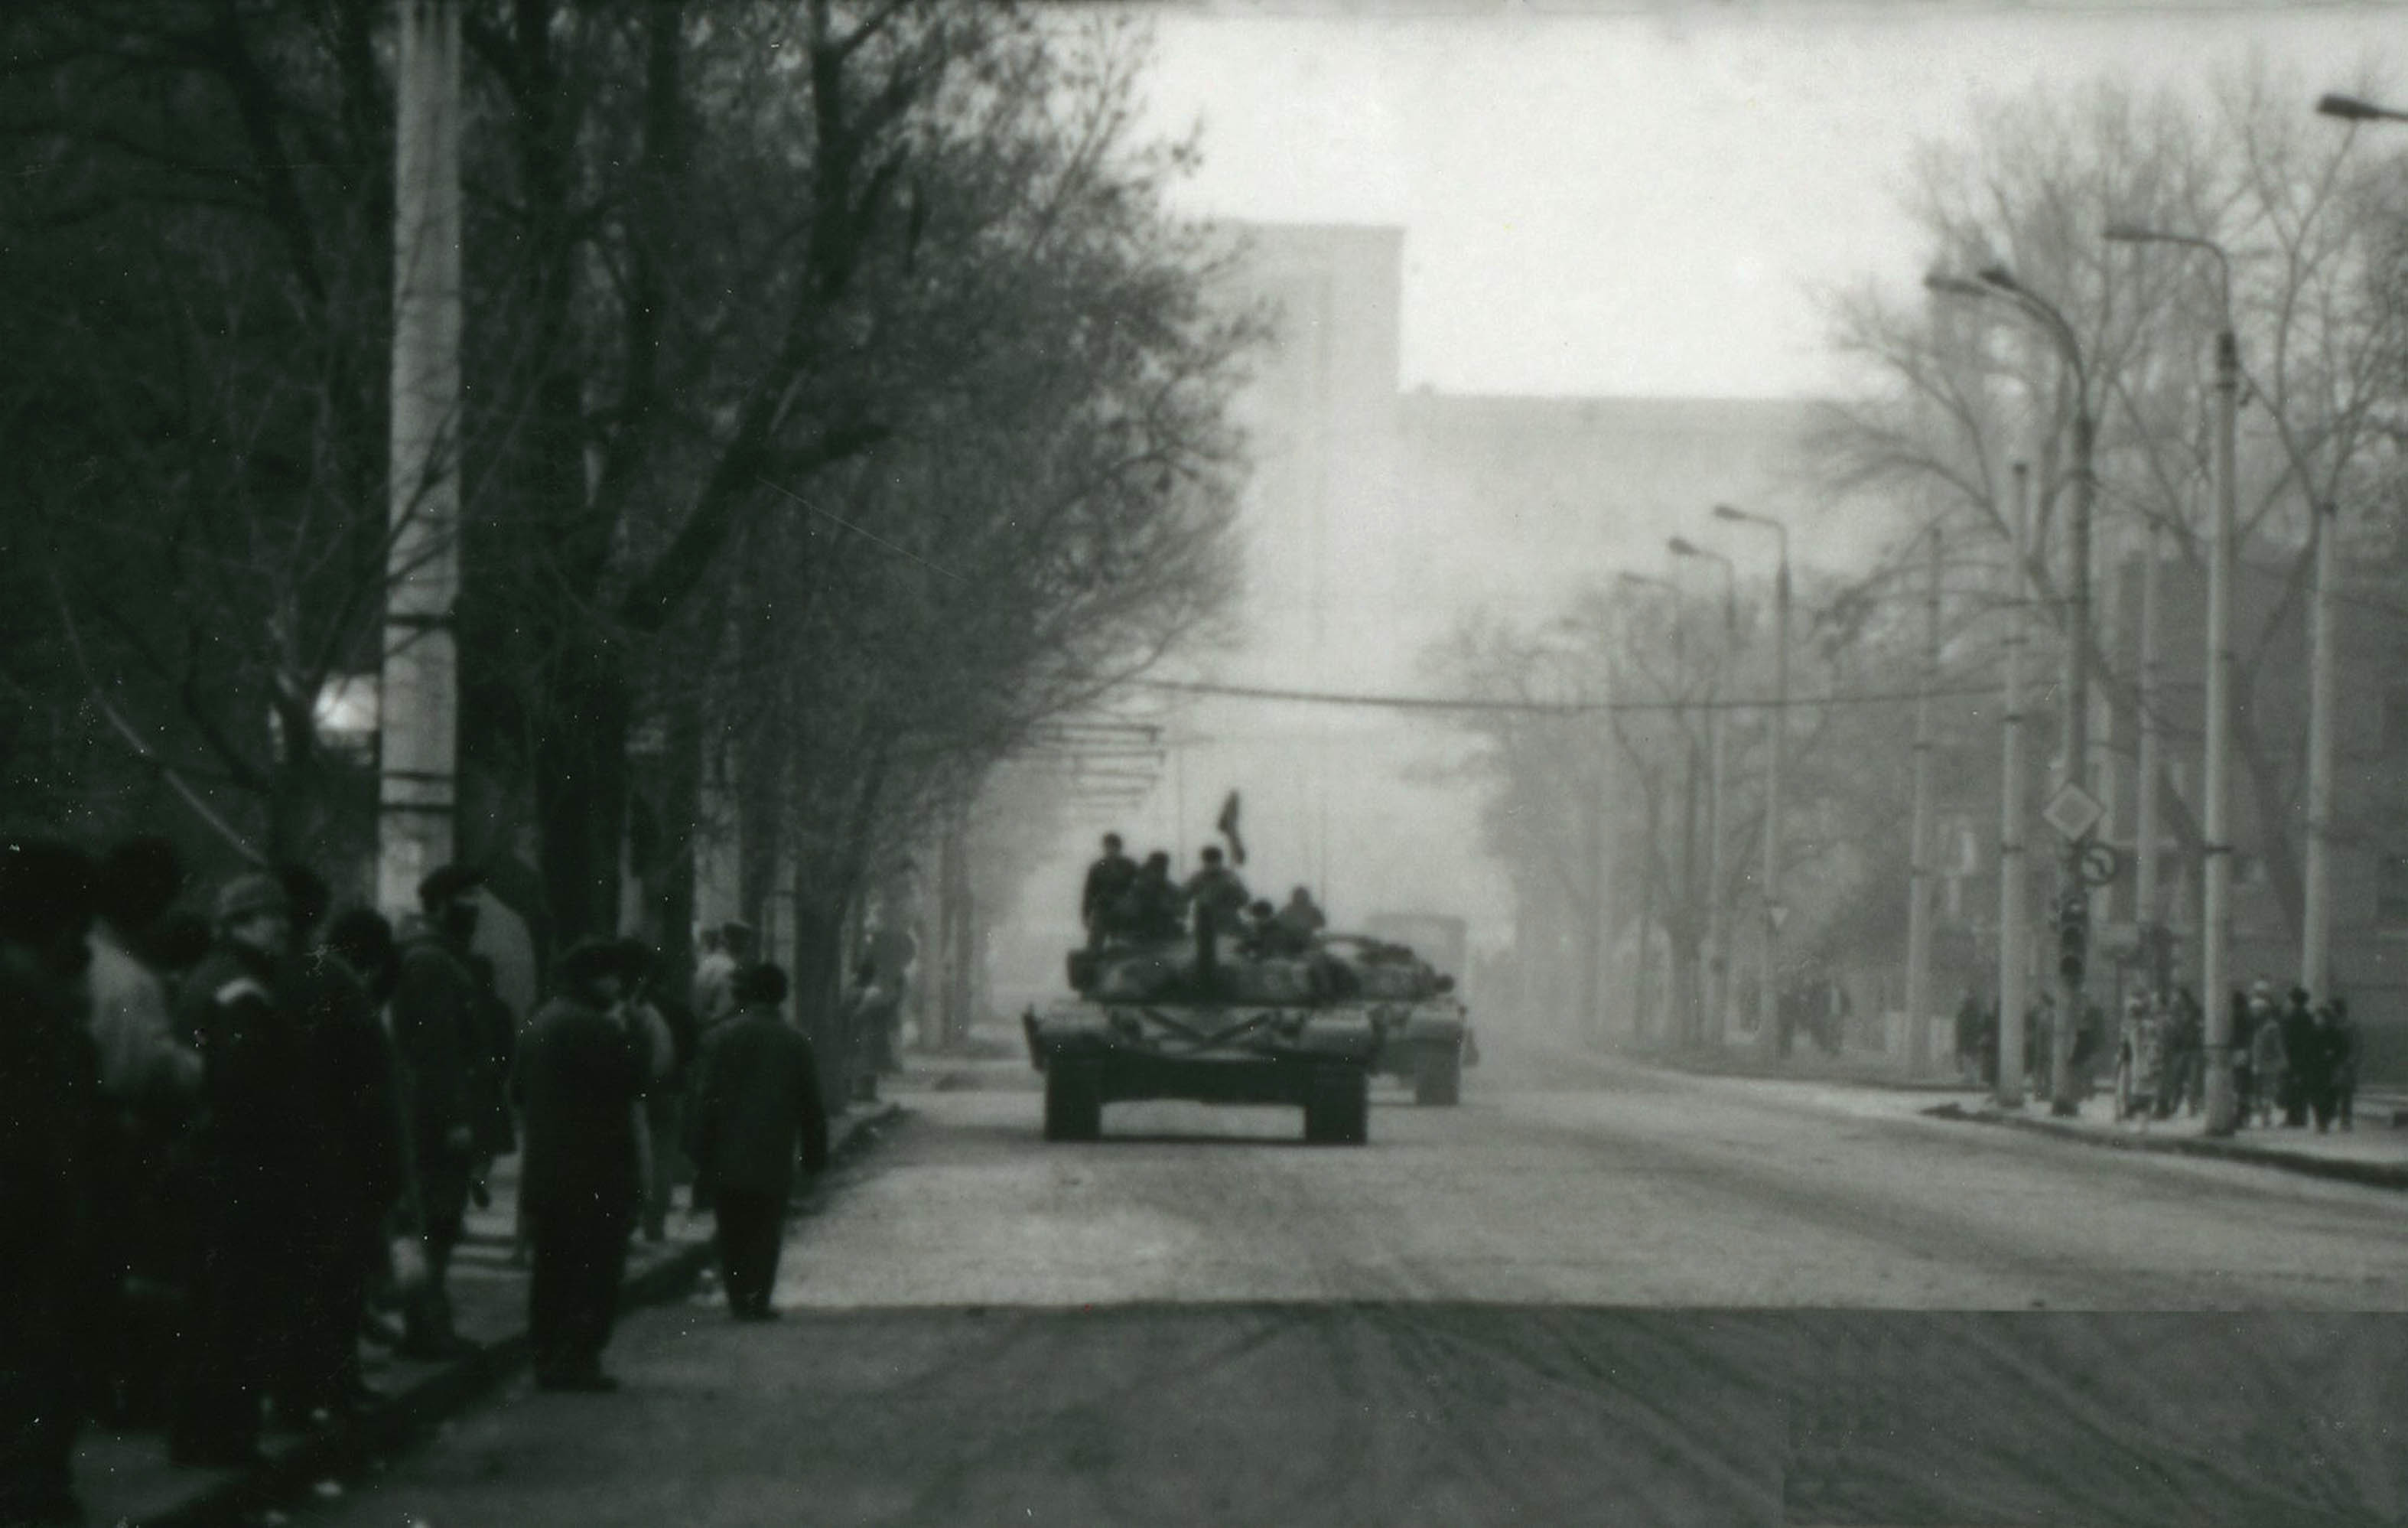 Revolutia Romana Ceausescu Decembrie 1989 Bucuresti Cartier Cotroceni Academia Militara tanc romanesc T-72